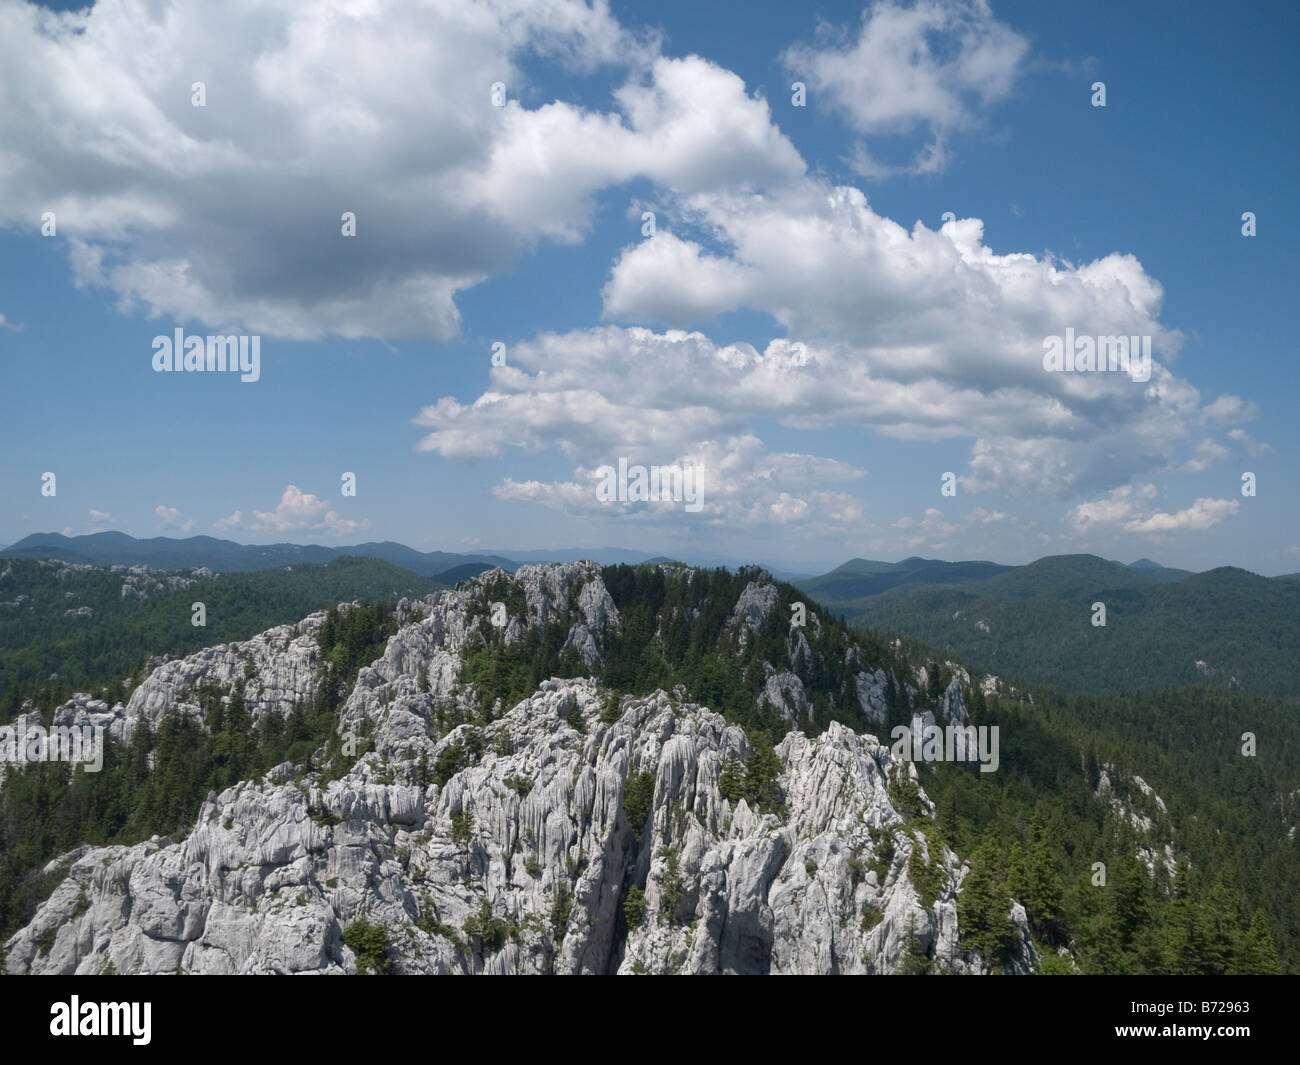 Panorama vom Gipfel eines Berges. Bijele Stijene, Kroatien. Stockfoto